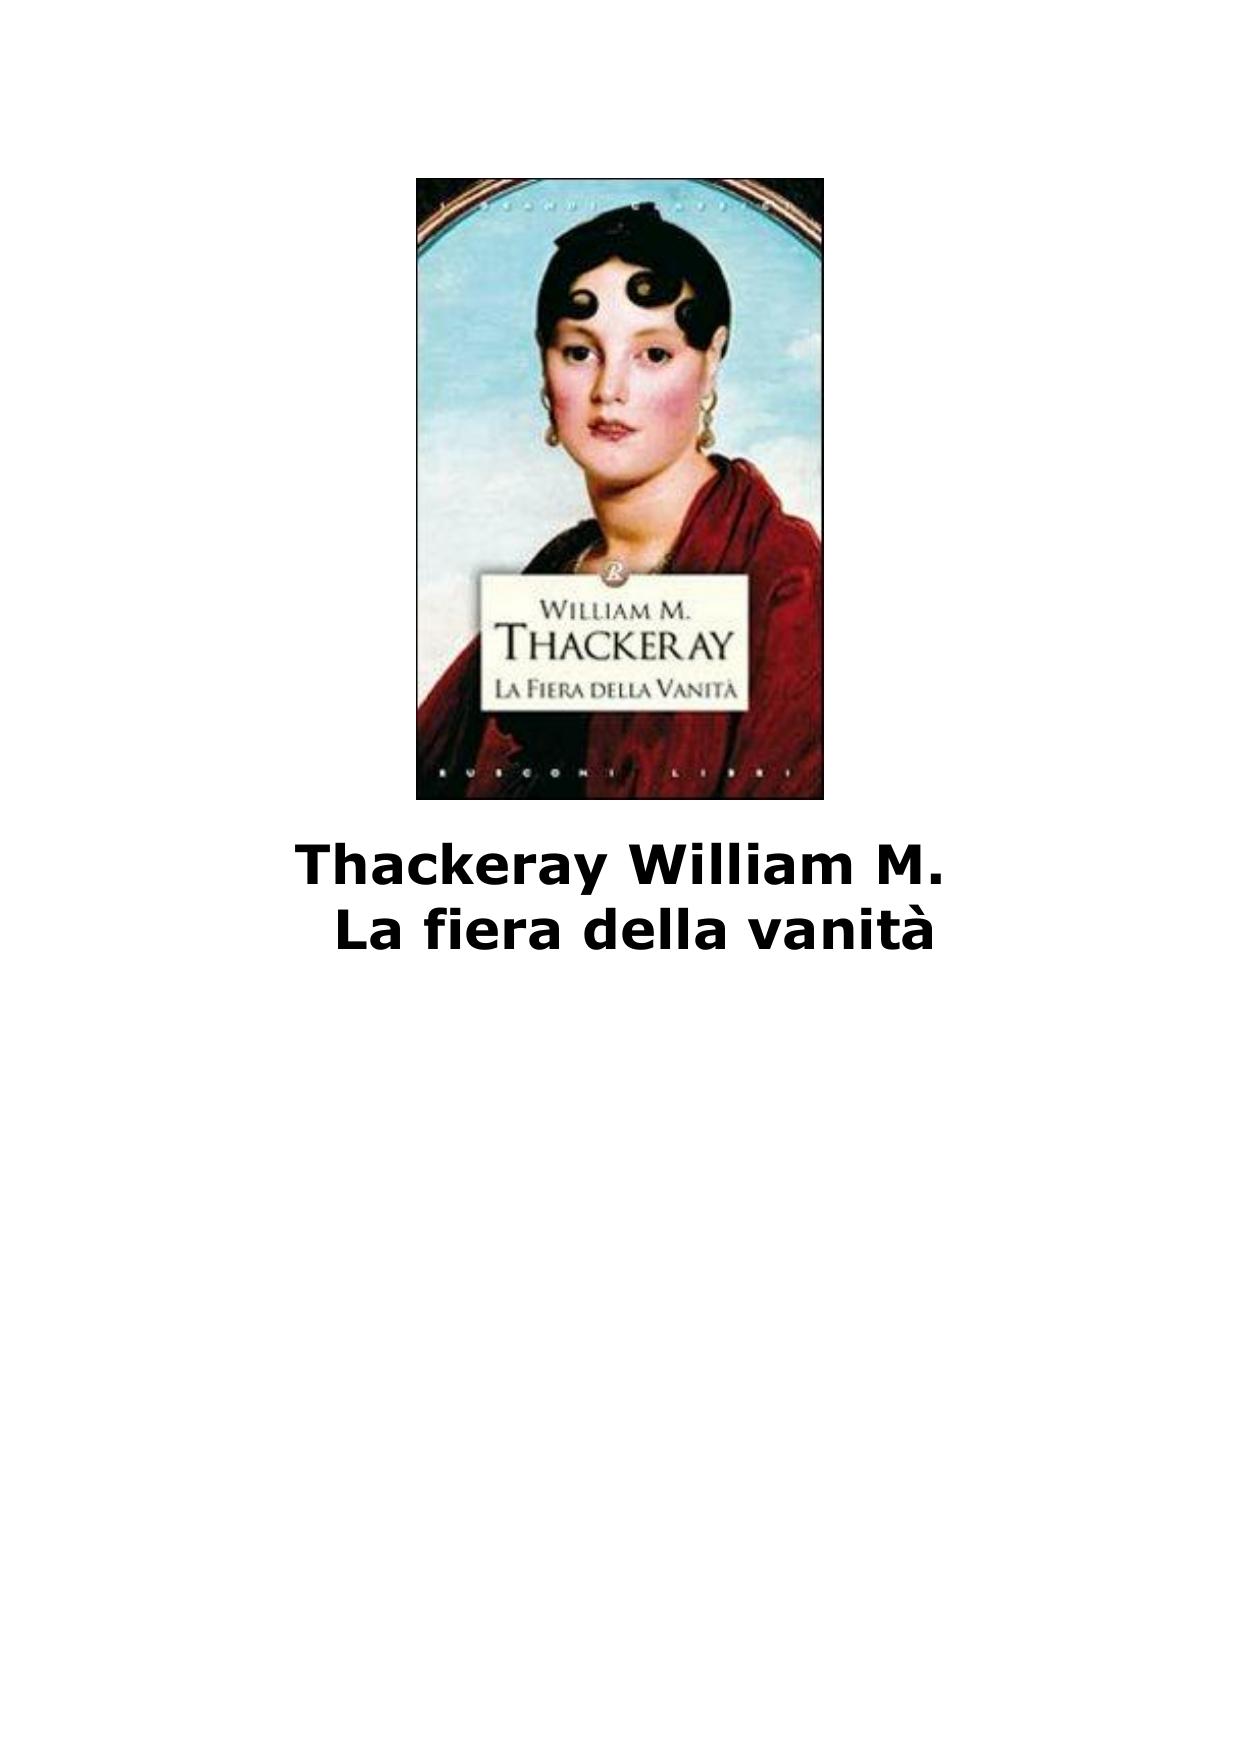 VA1916 Thackeray William M. by La fiera della vanità